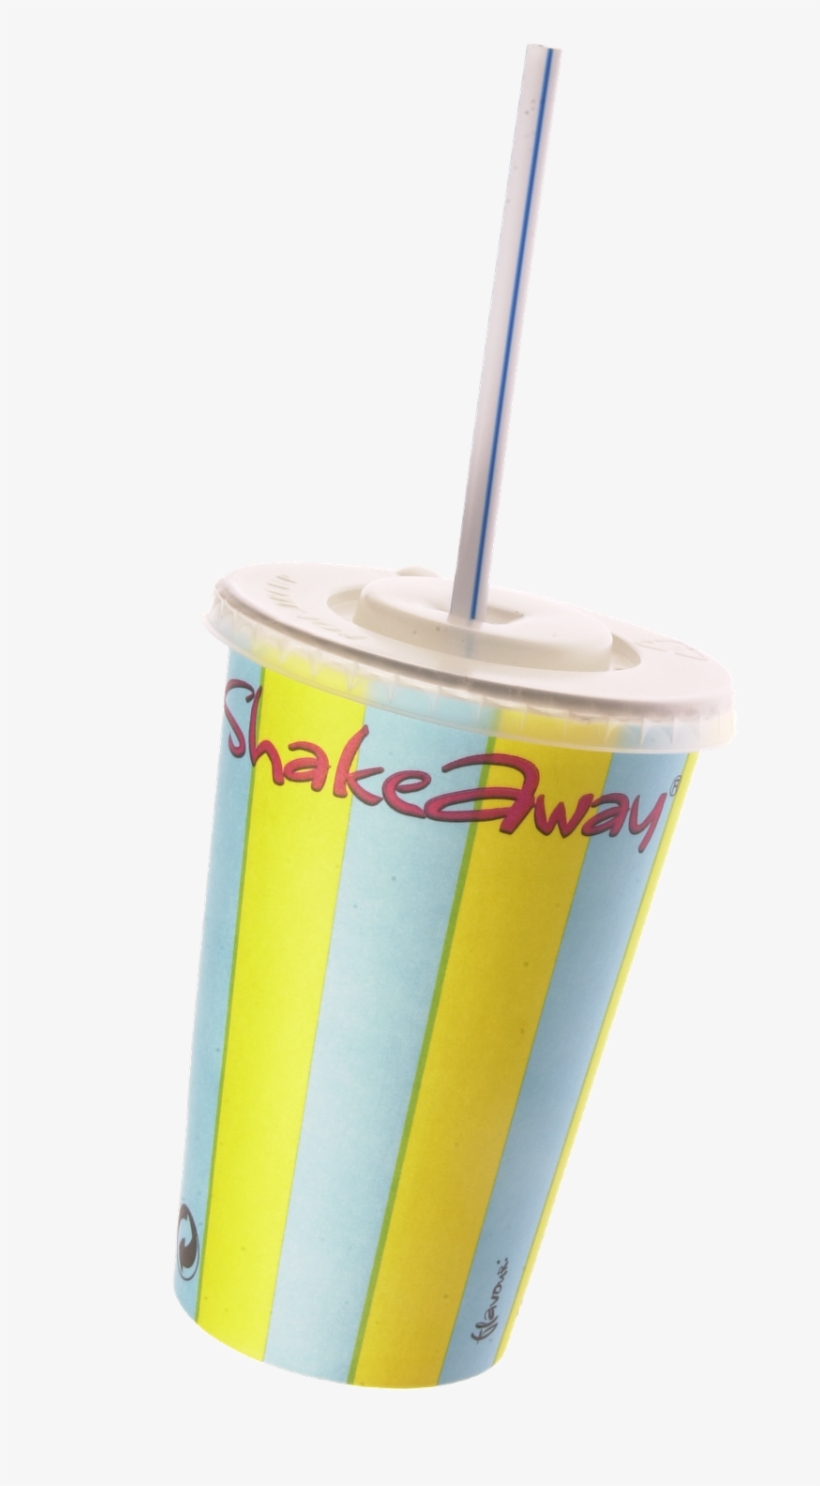 Original Shakeaway Cup - Shake Away Milkshake, transparent png #3178030